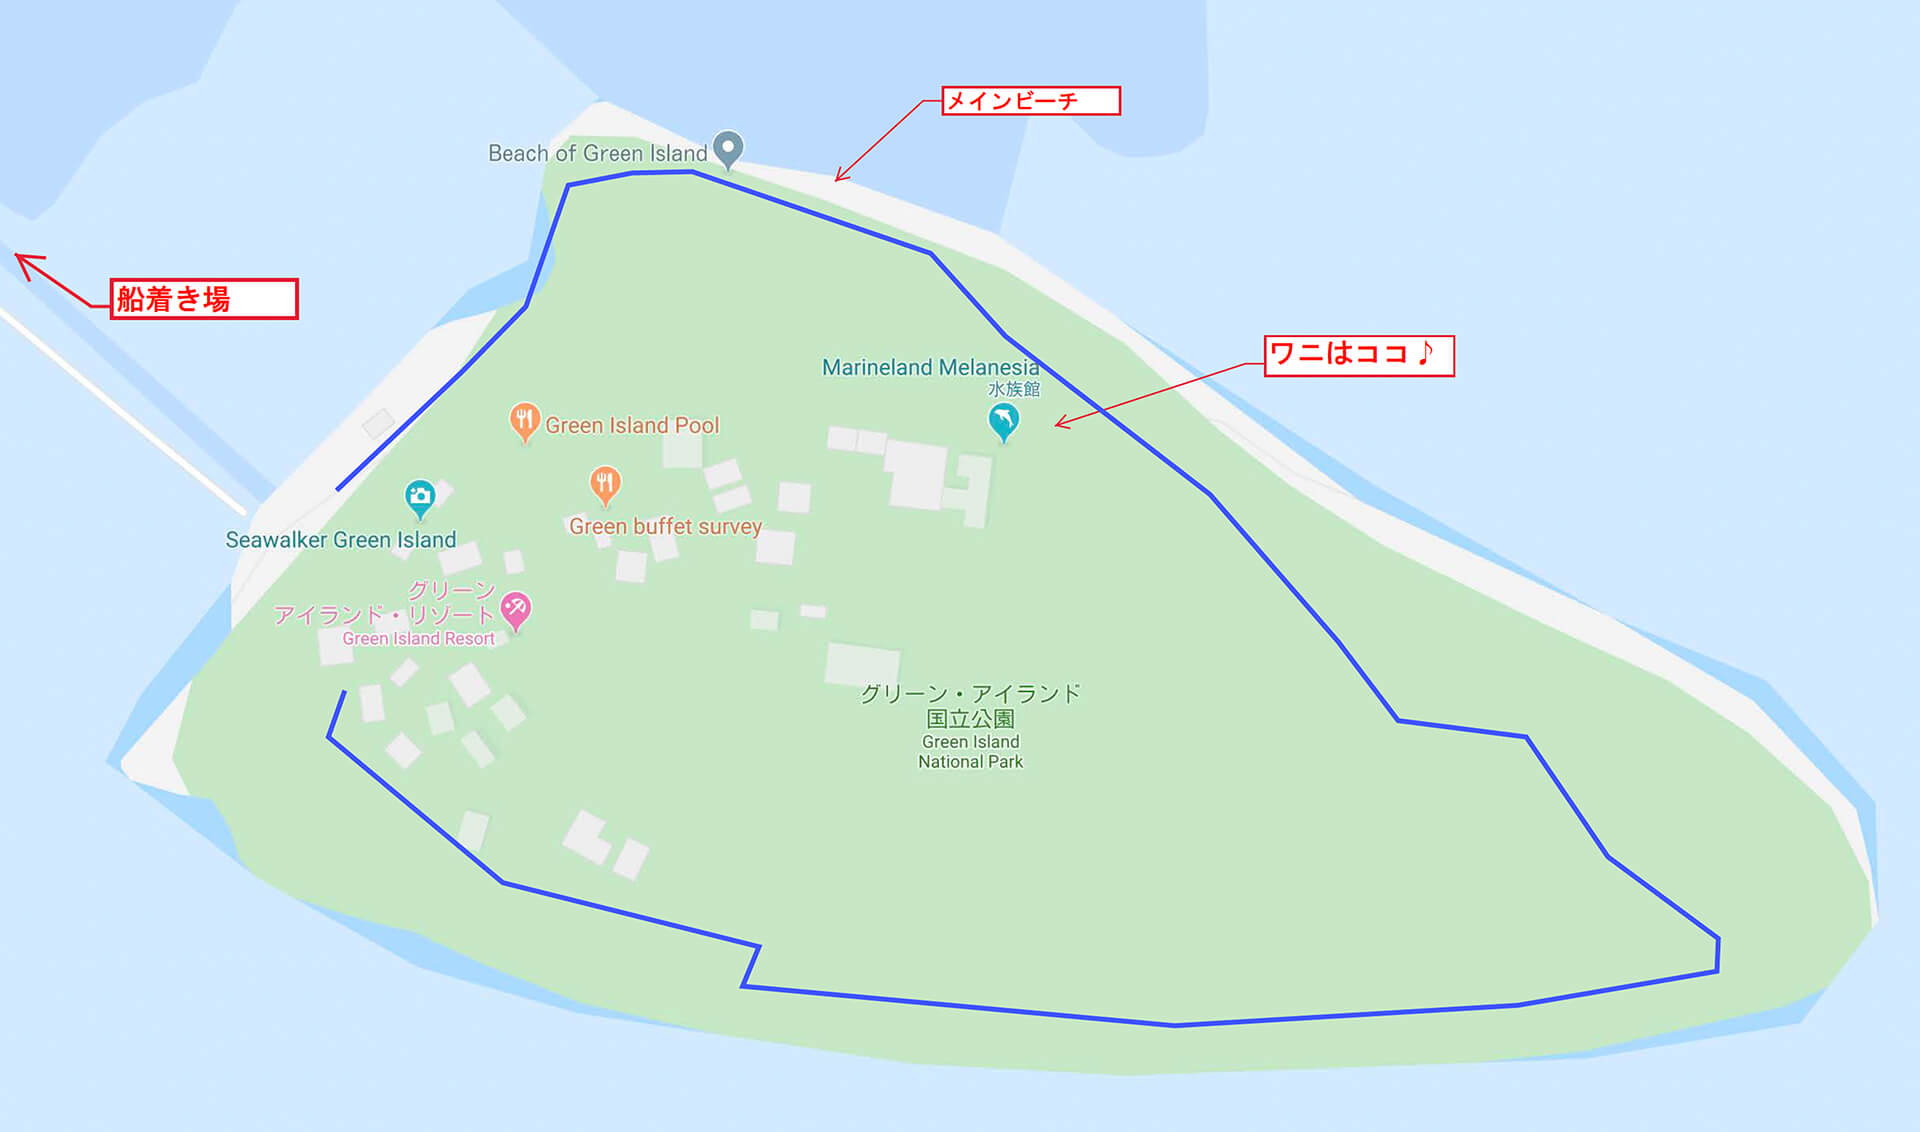 ケアンズ紀行part2 ケアンズ市内から片道50分で行けるショートトリップ 珊瑚の島 グリーン島 へ行ってみよう 関東のお出かけ情報ならオソトイコ